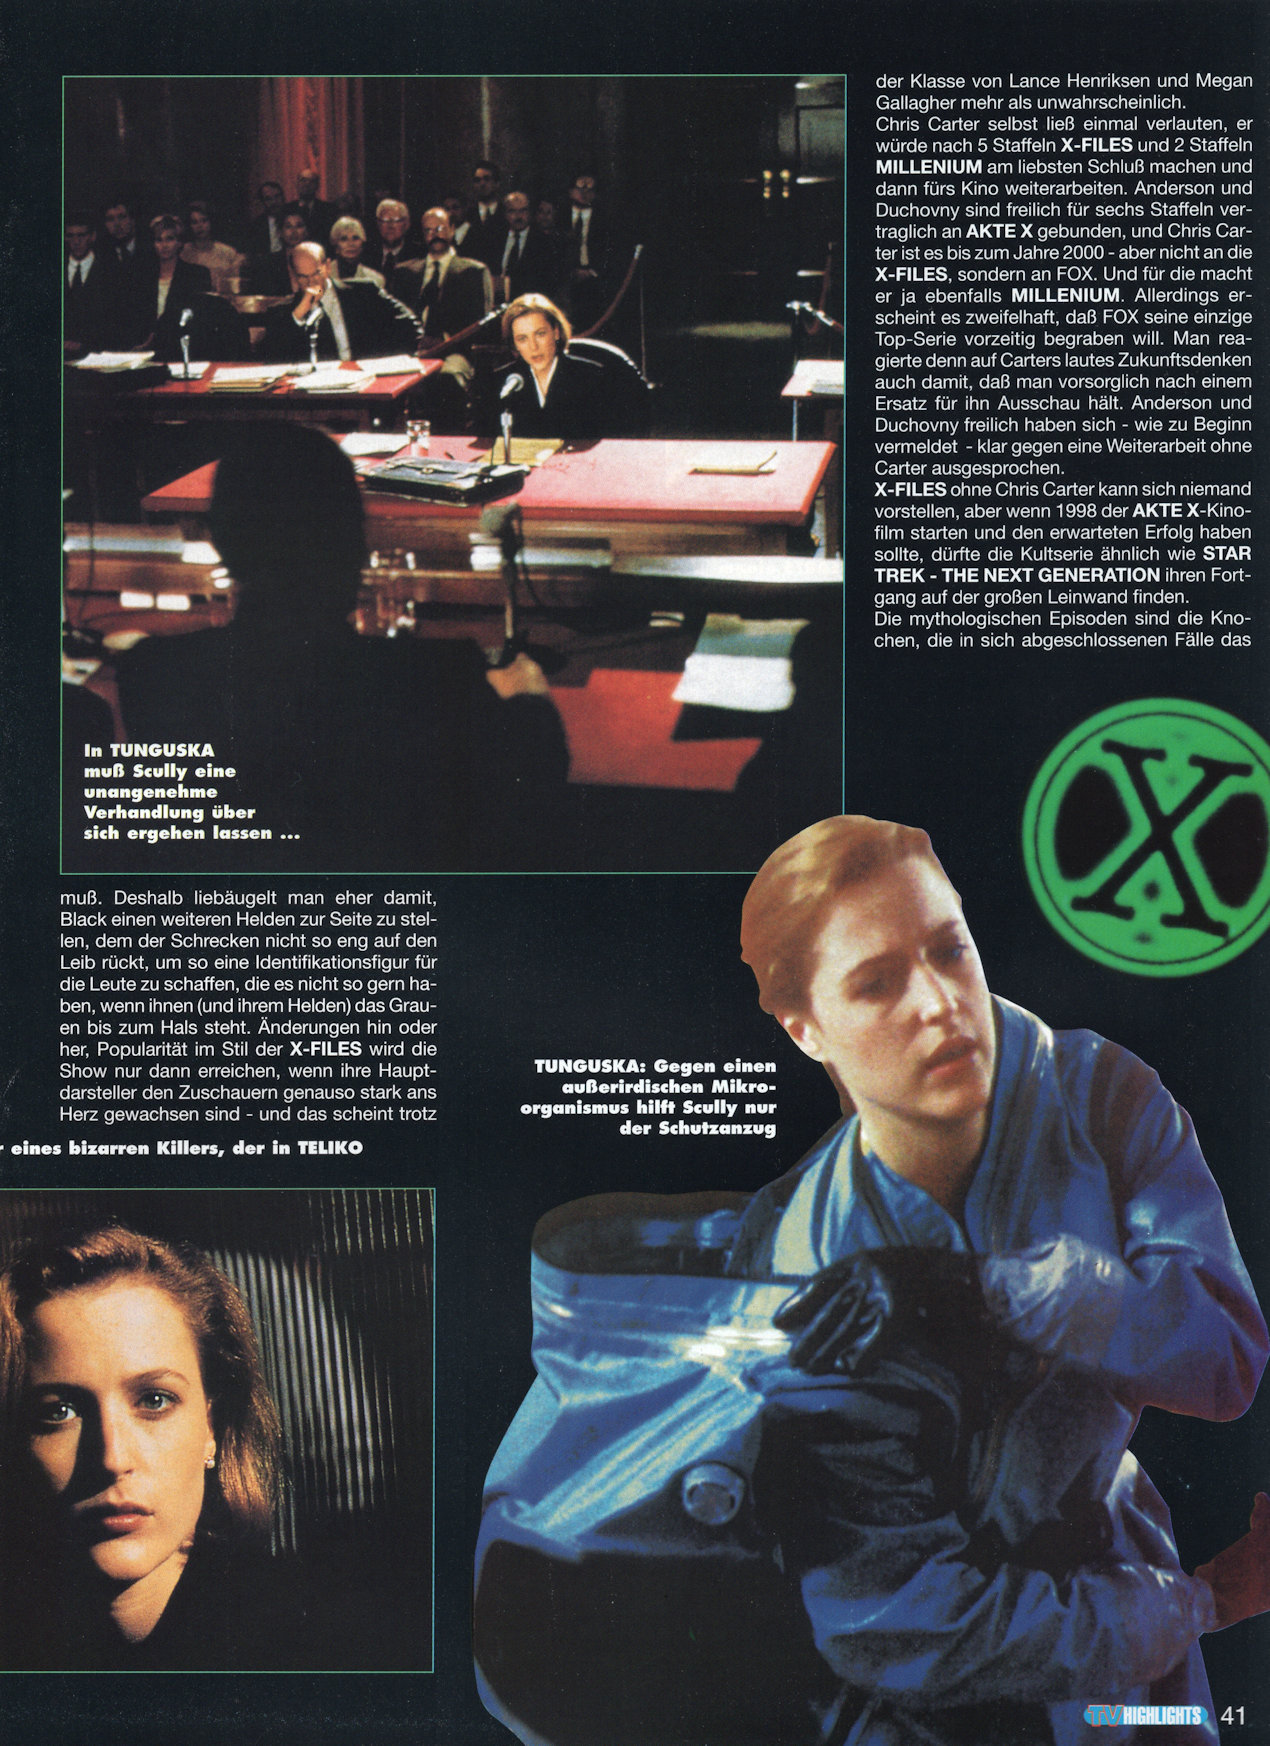 TV Highlights AUG 1997 - Eine Erschreckende Zukunft - Page 11
Keywords: xfiles_media